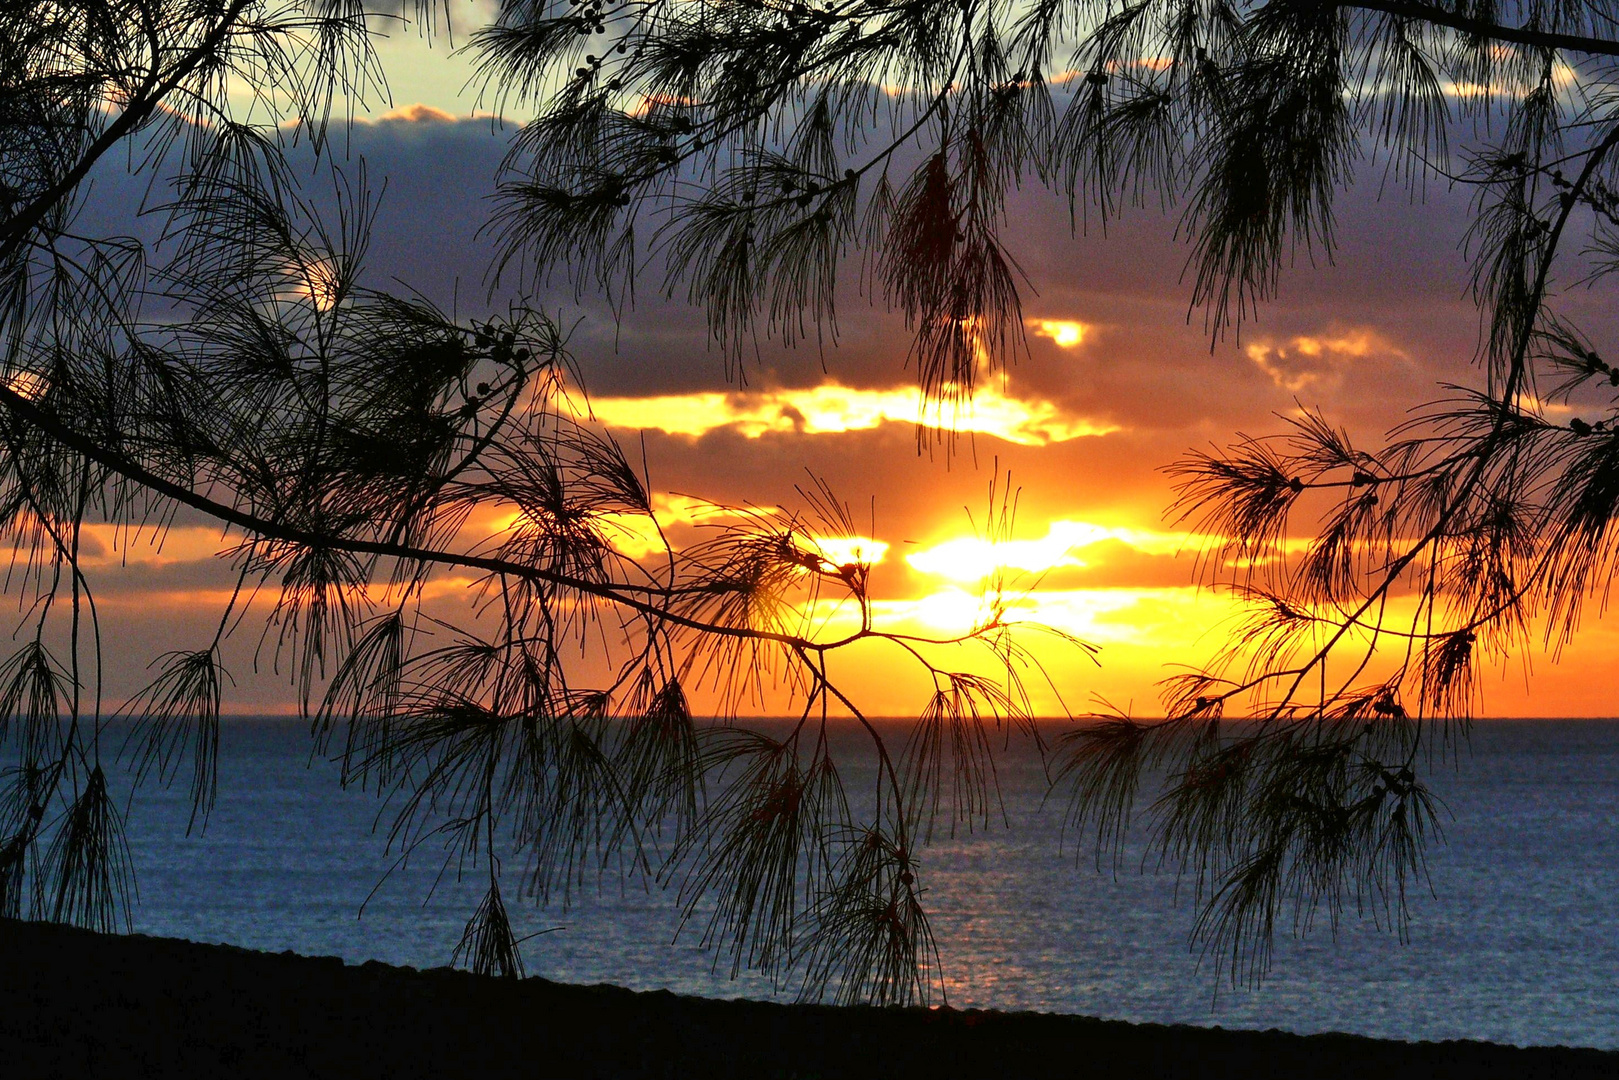 Sonnenuntergang auf Lanzarote